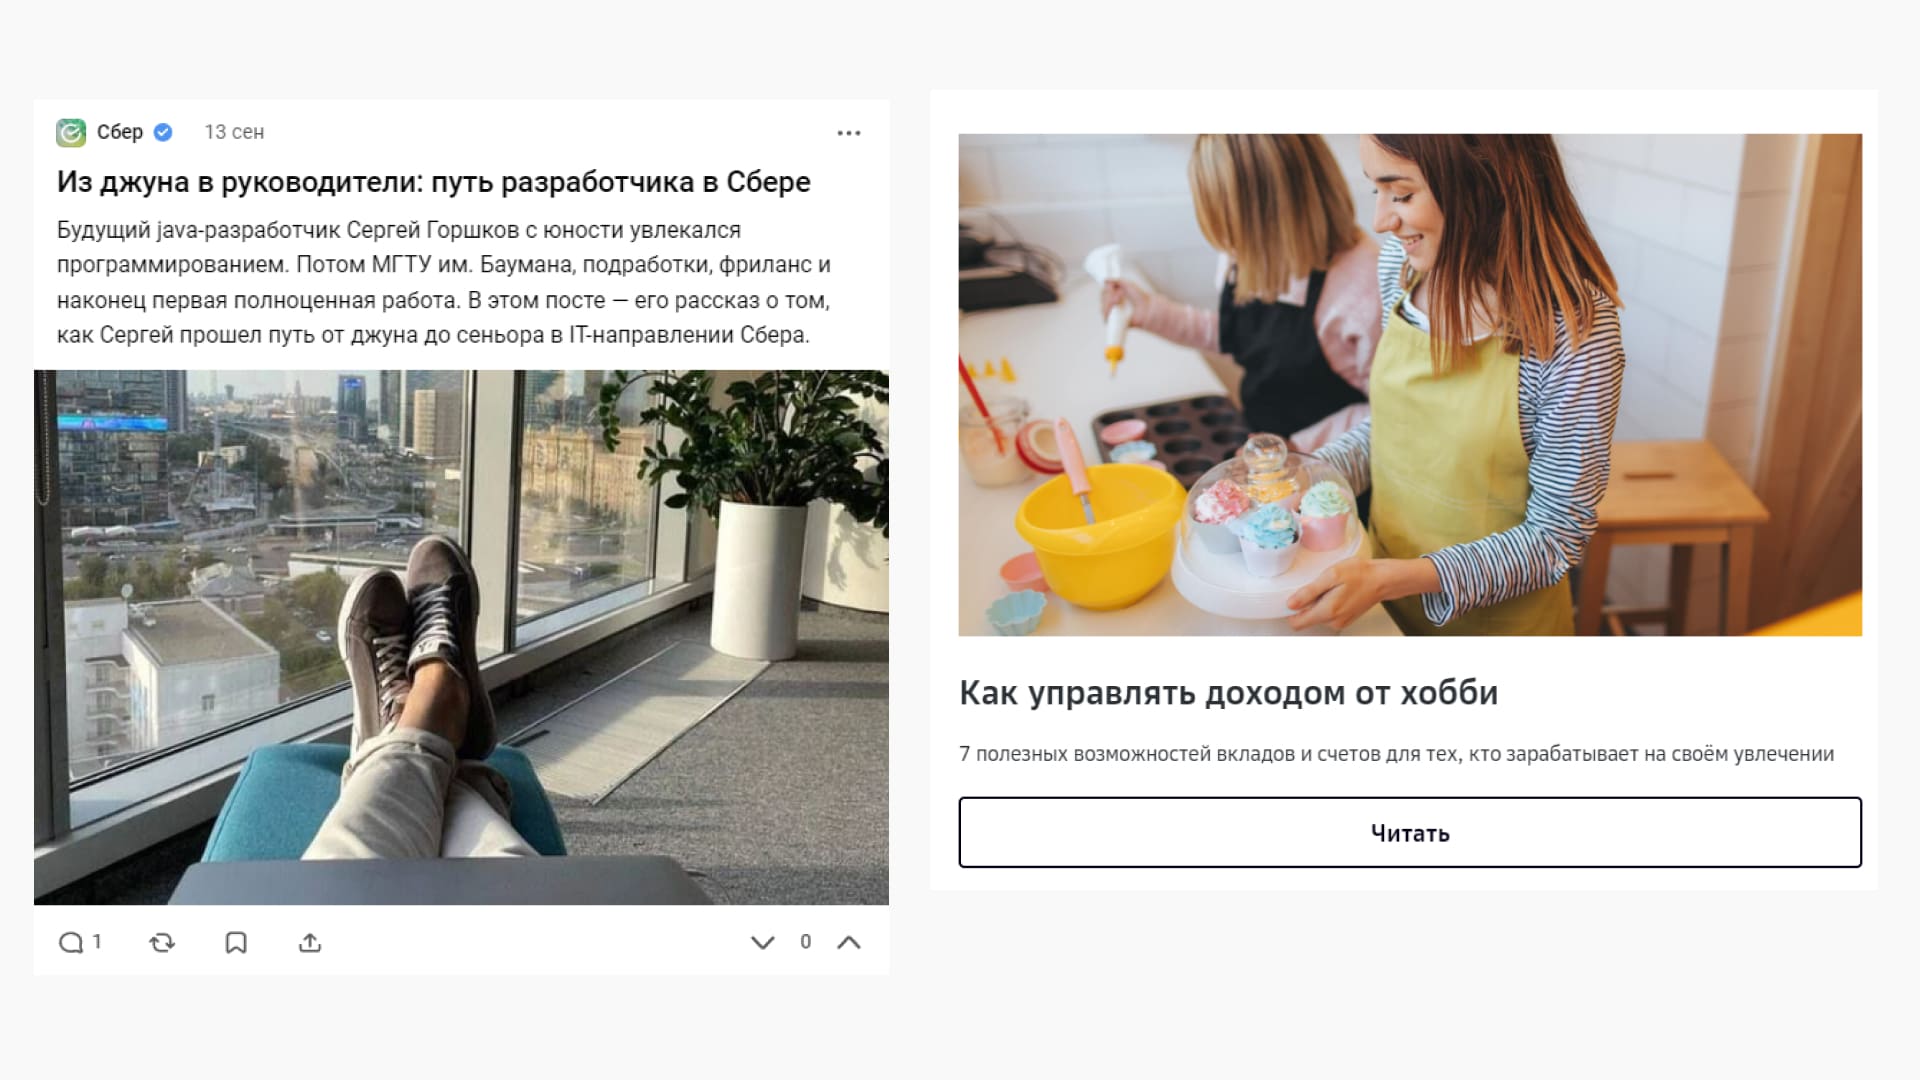 Пример контент-маркетинга от «Сбера» – публикации в блоге компании на vc.ru работают на разную аудиторию